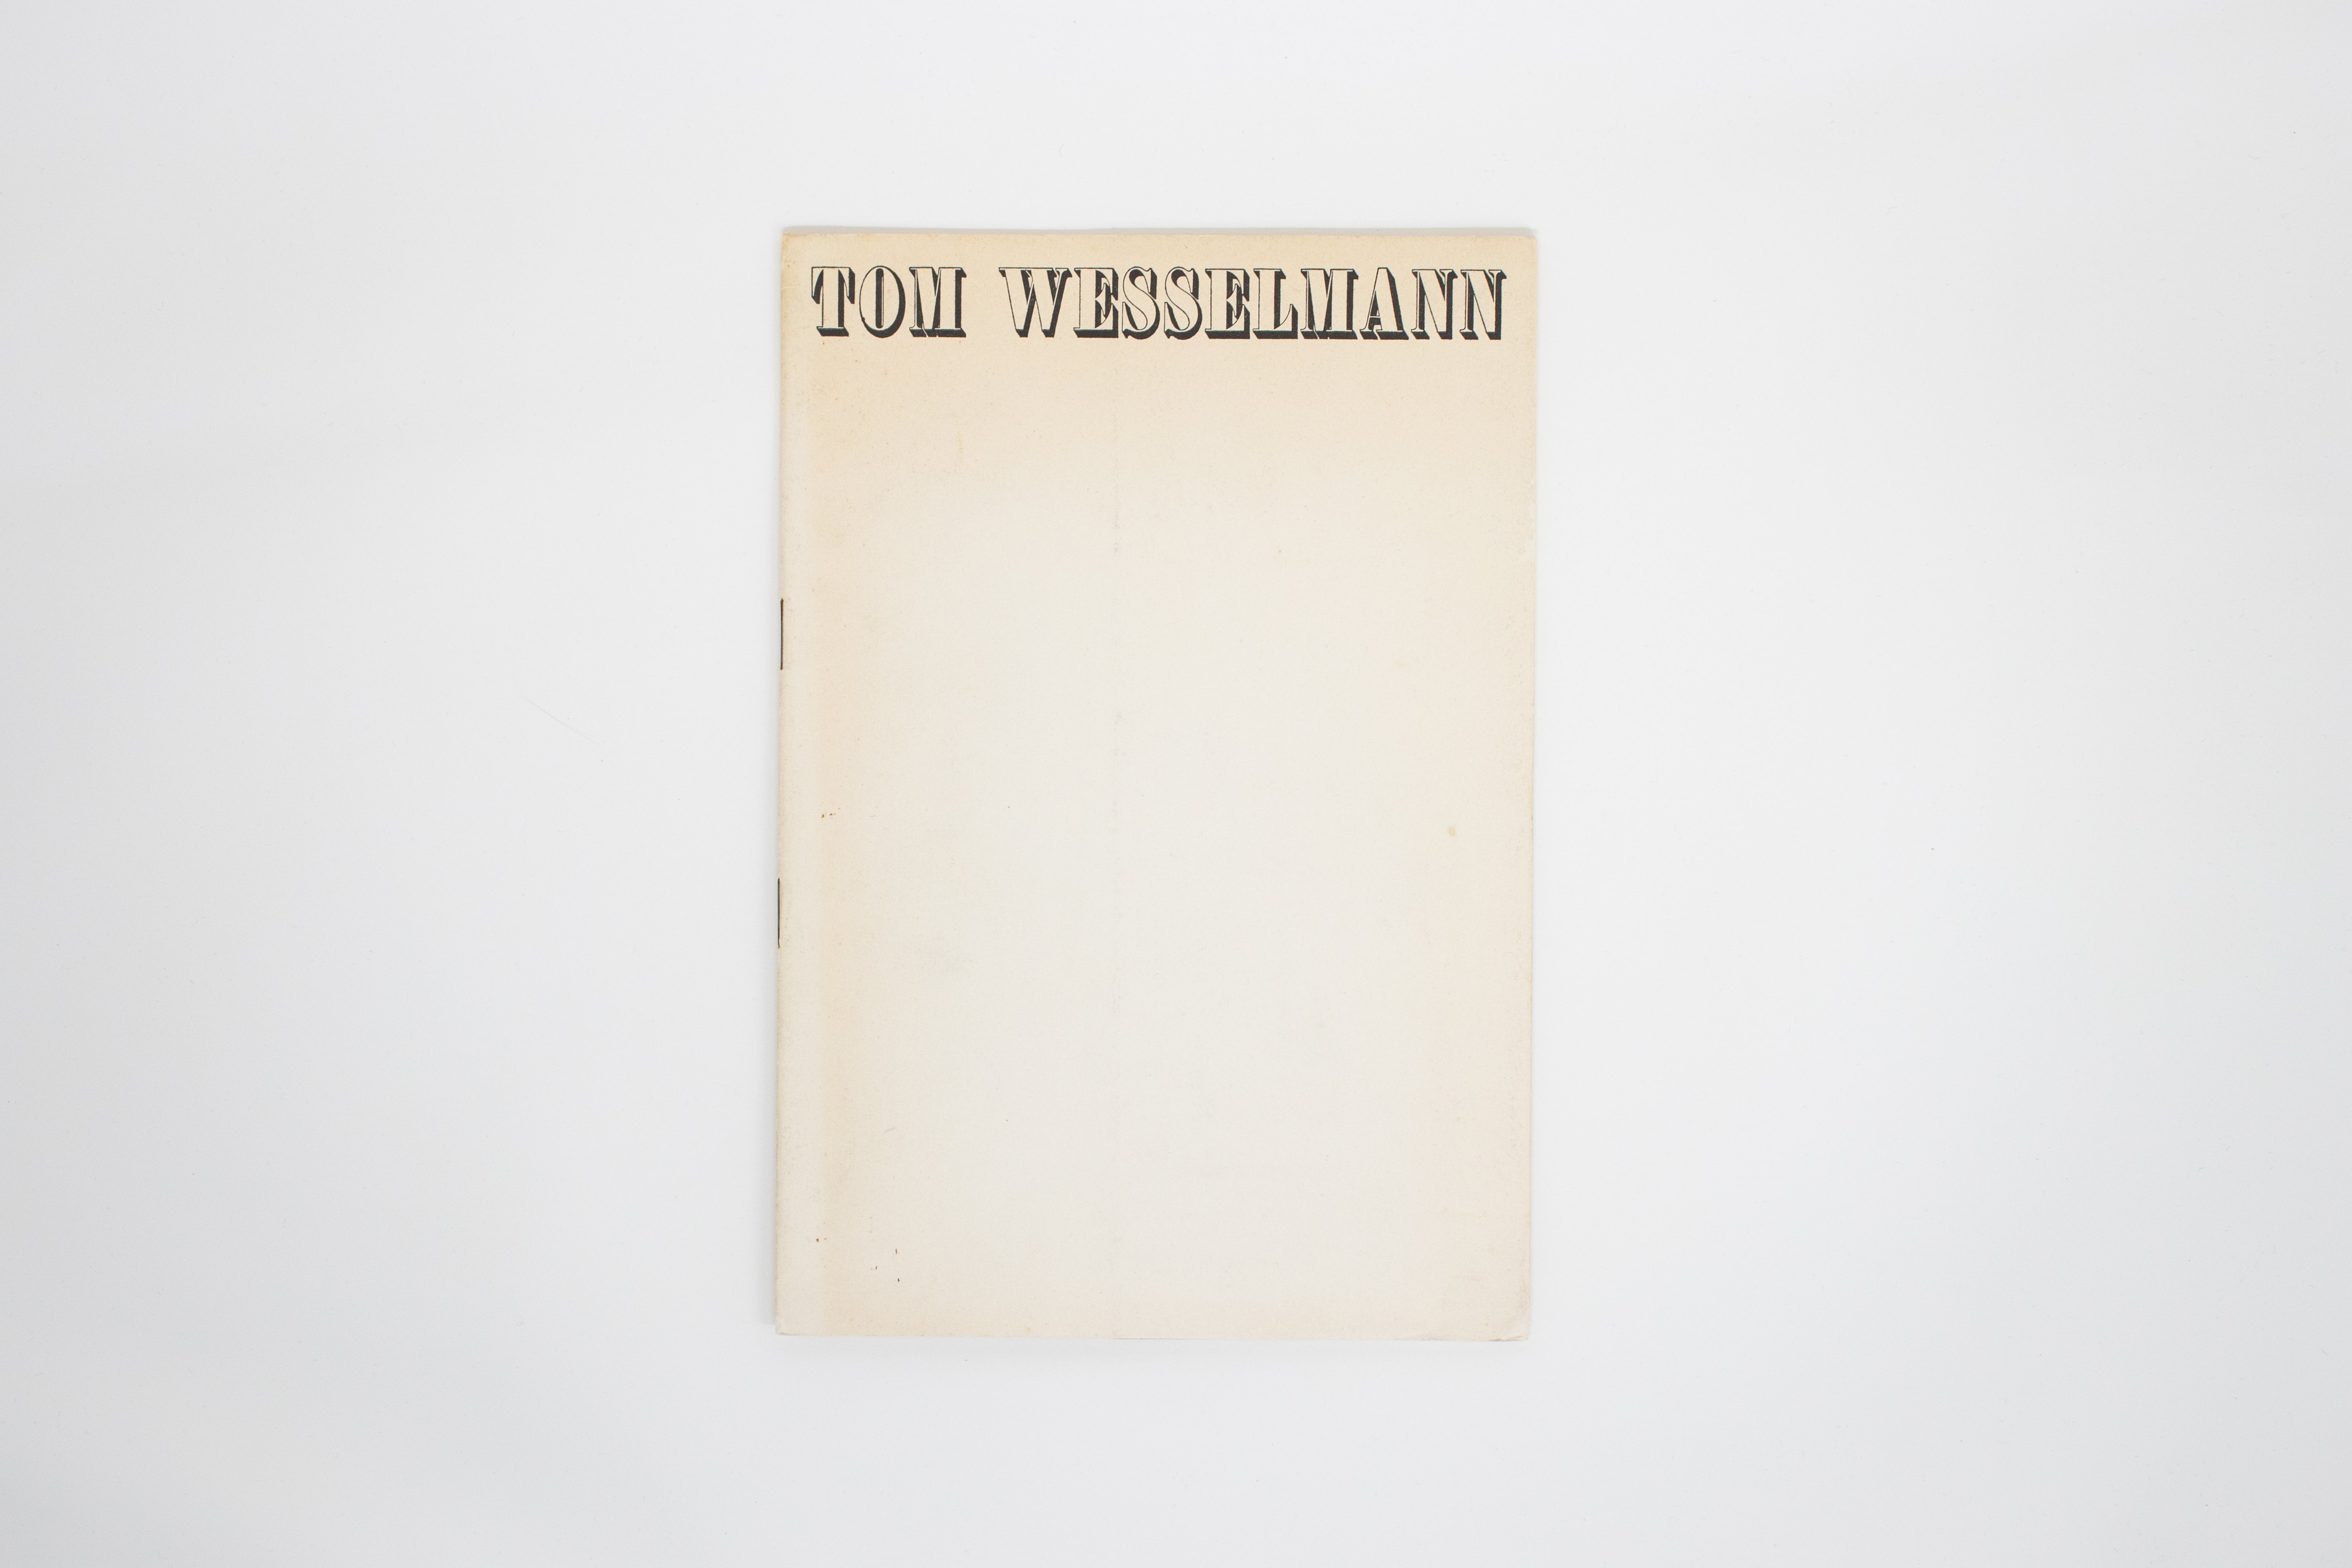 Wesselmann-1967-cover1.jpg